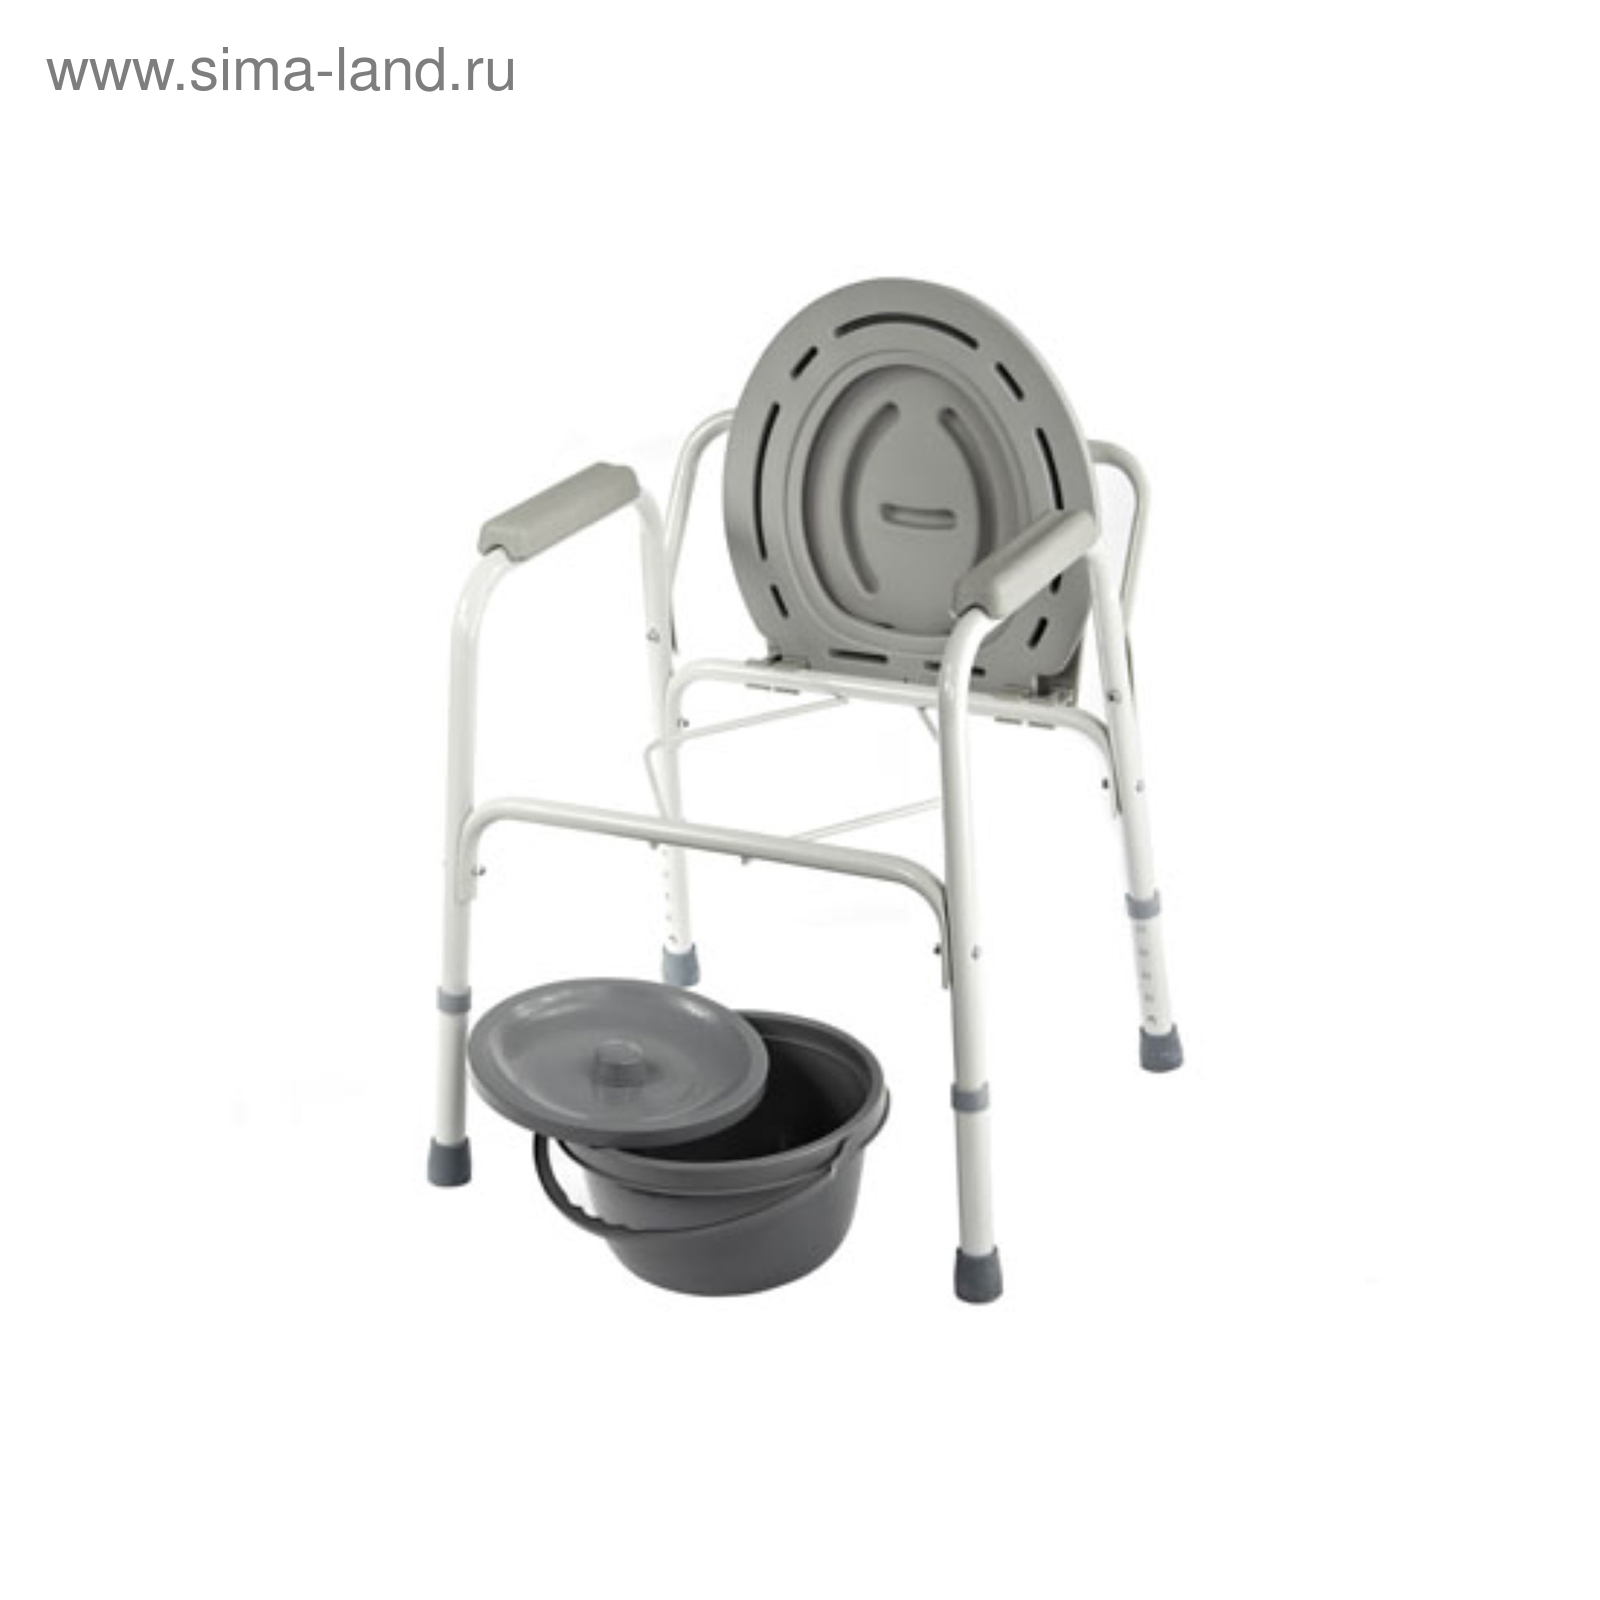 Кресло-стул с санитарным оснащением симс-2 WC Econom